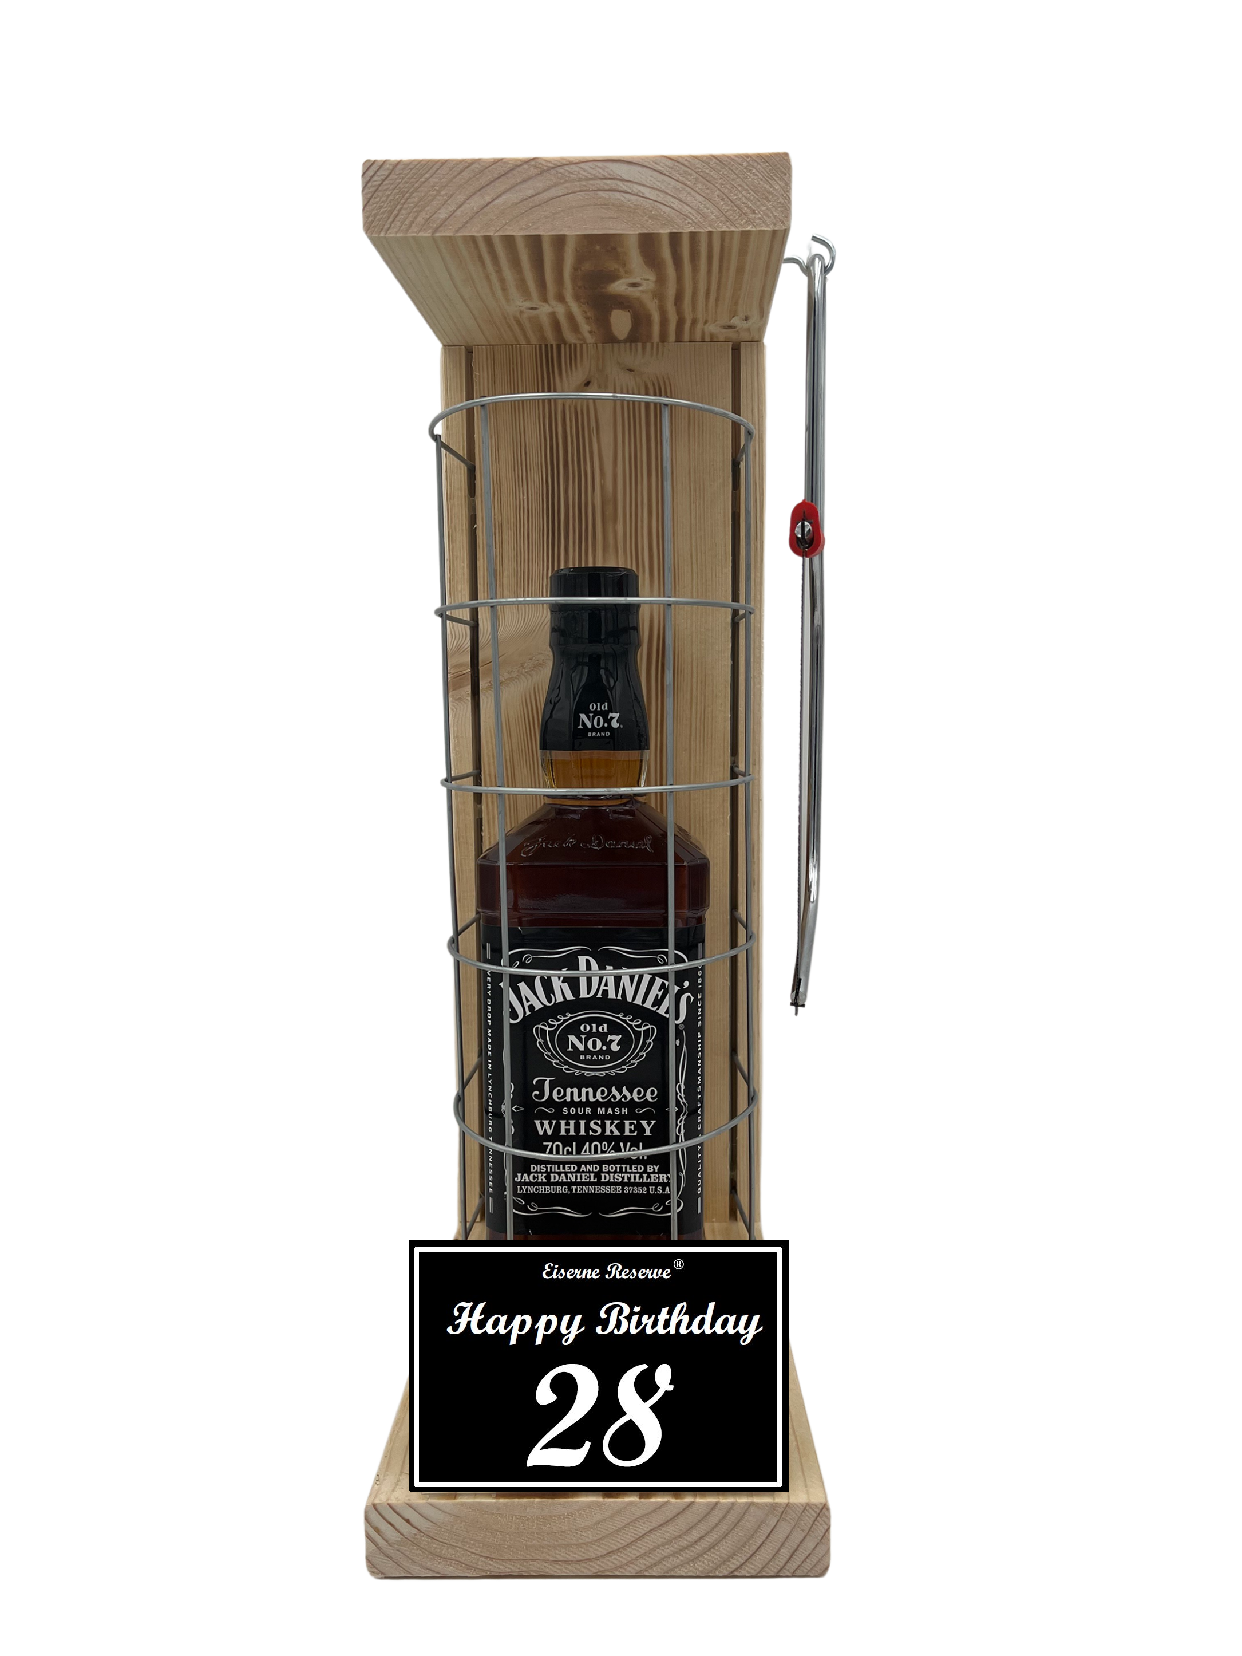 Jack Daniels Geschenk zum 28 Geburtstag - Eiserne Reserve Gitterkäfig